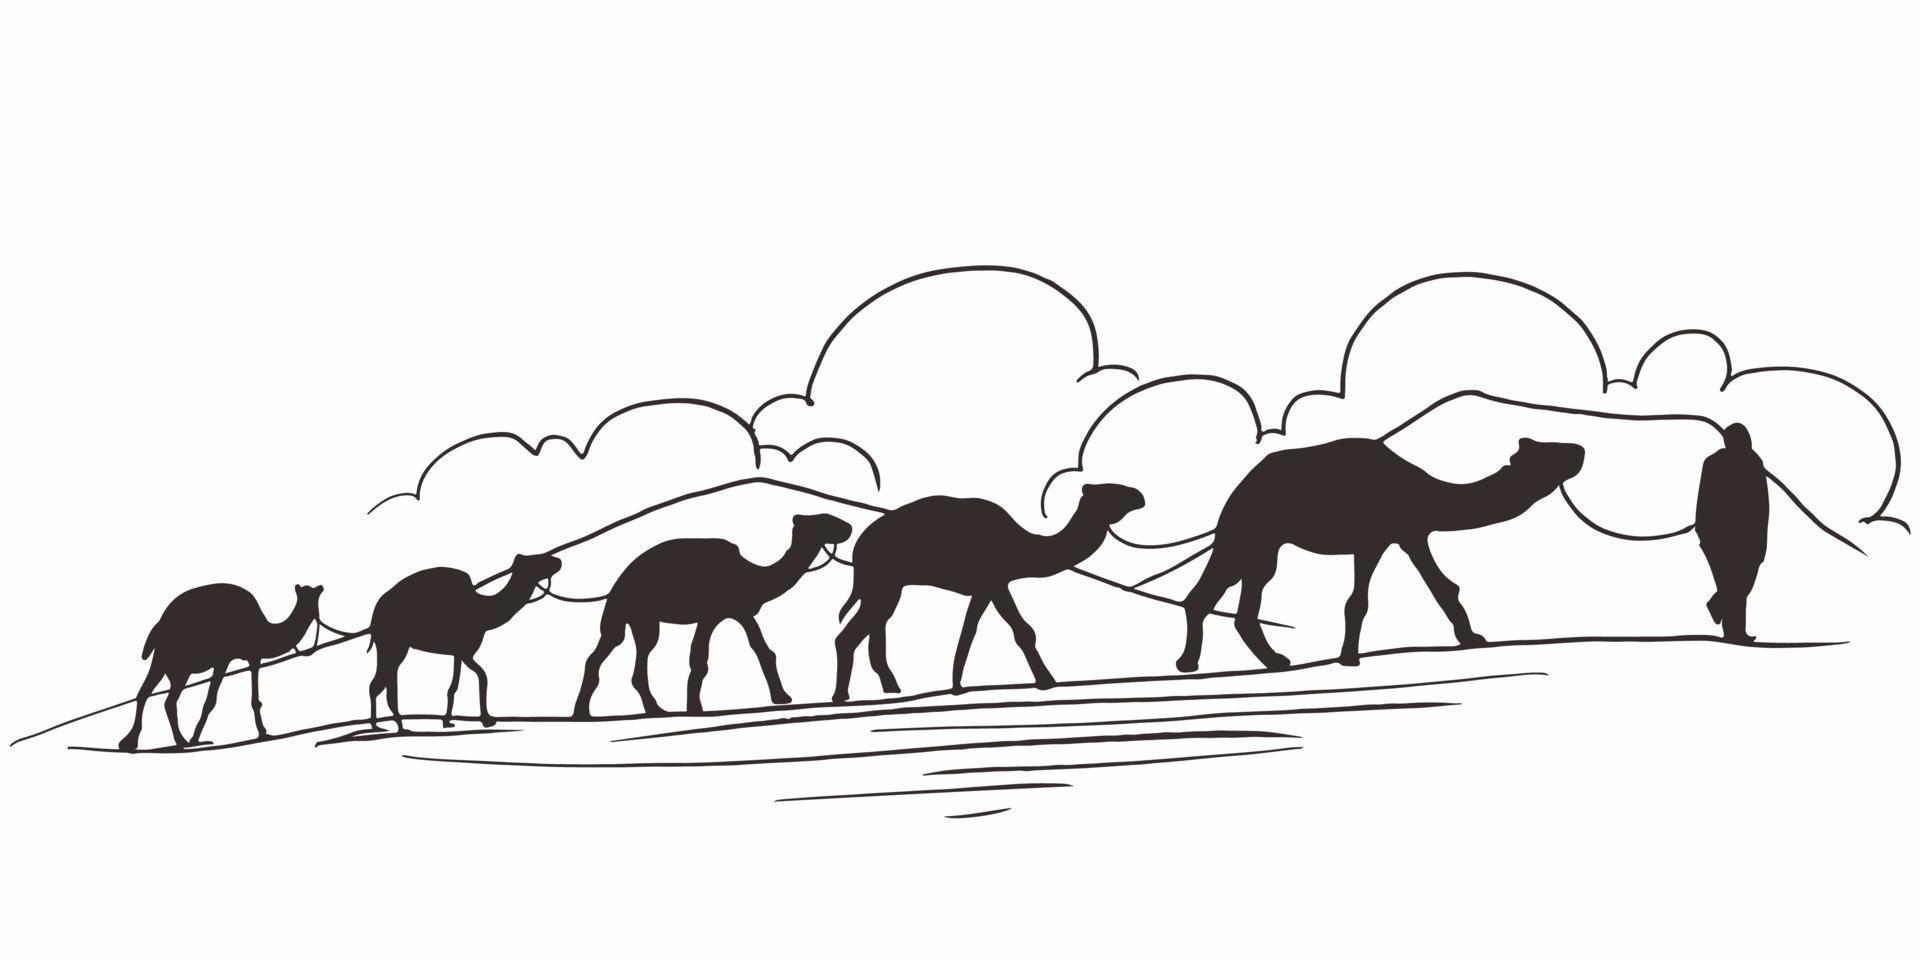 dibujado a mano de caravana con camellos en el desierto. camello caminando por el desierto. caravana atravesando las dunas. vector